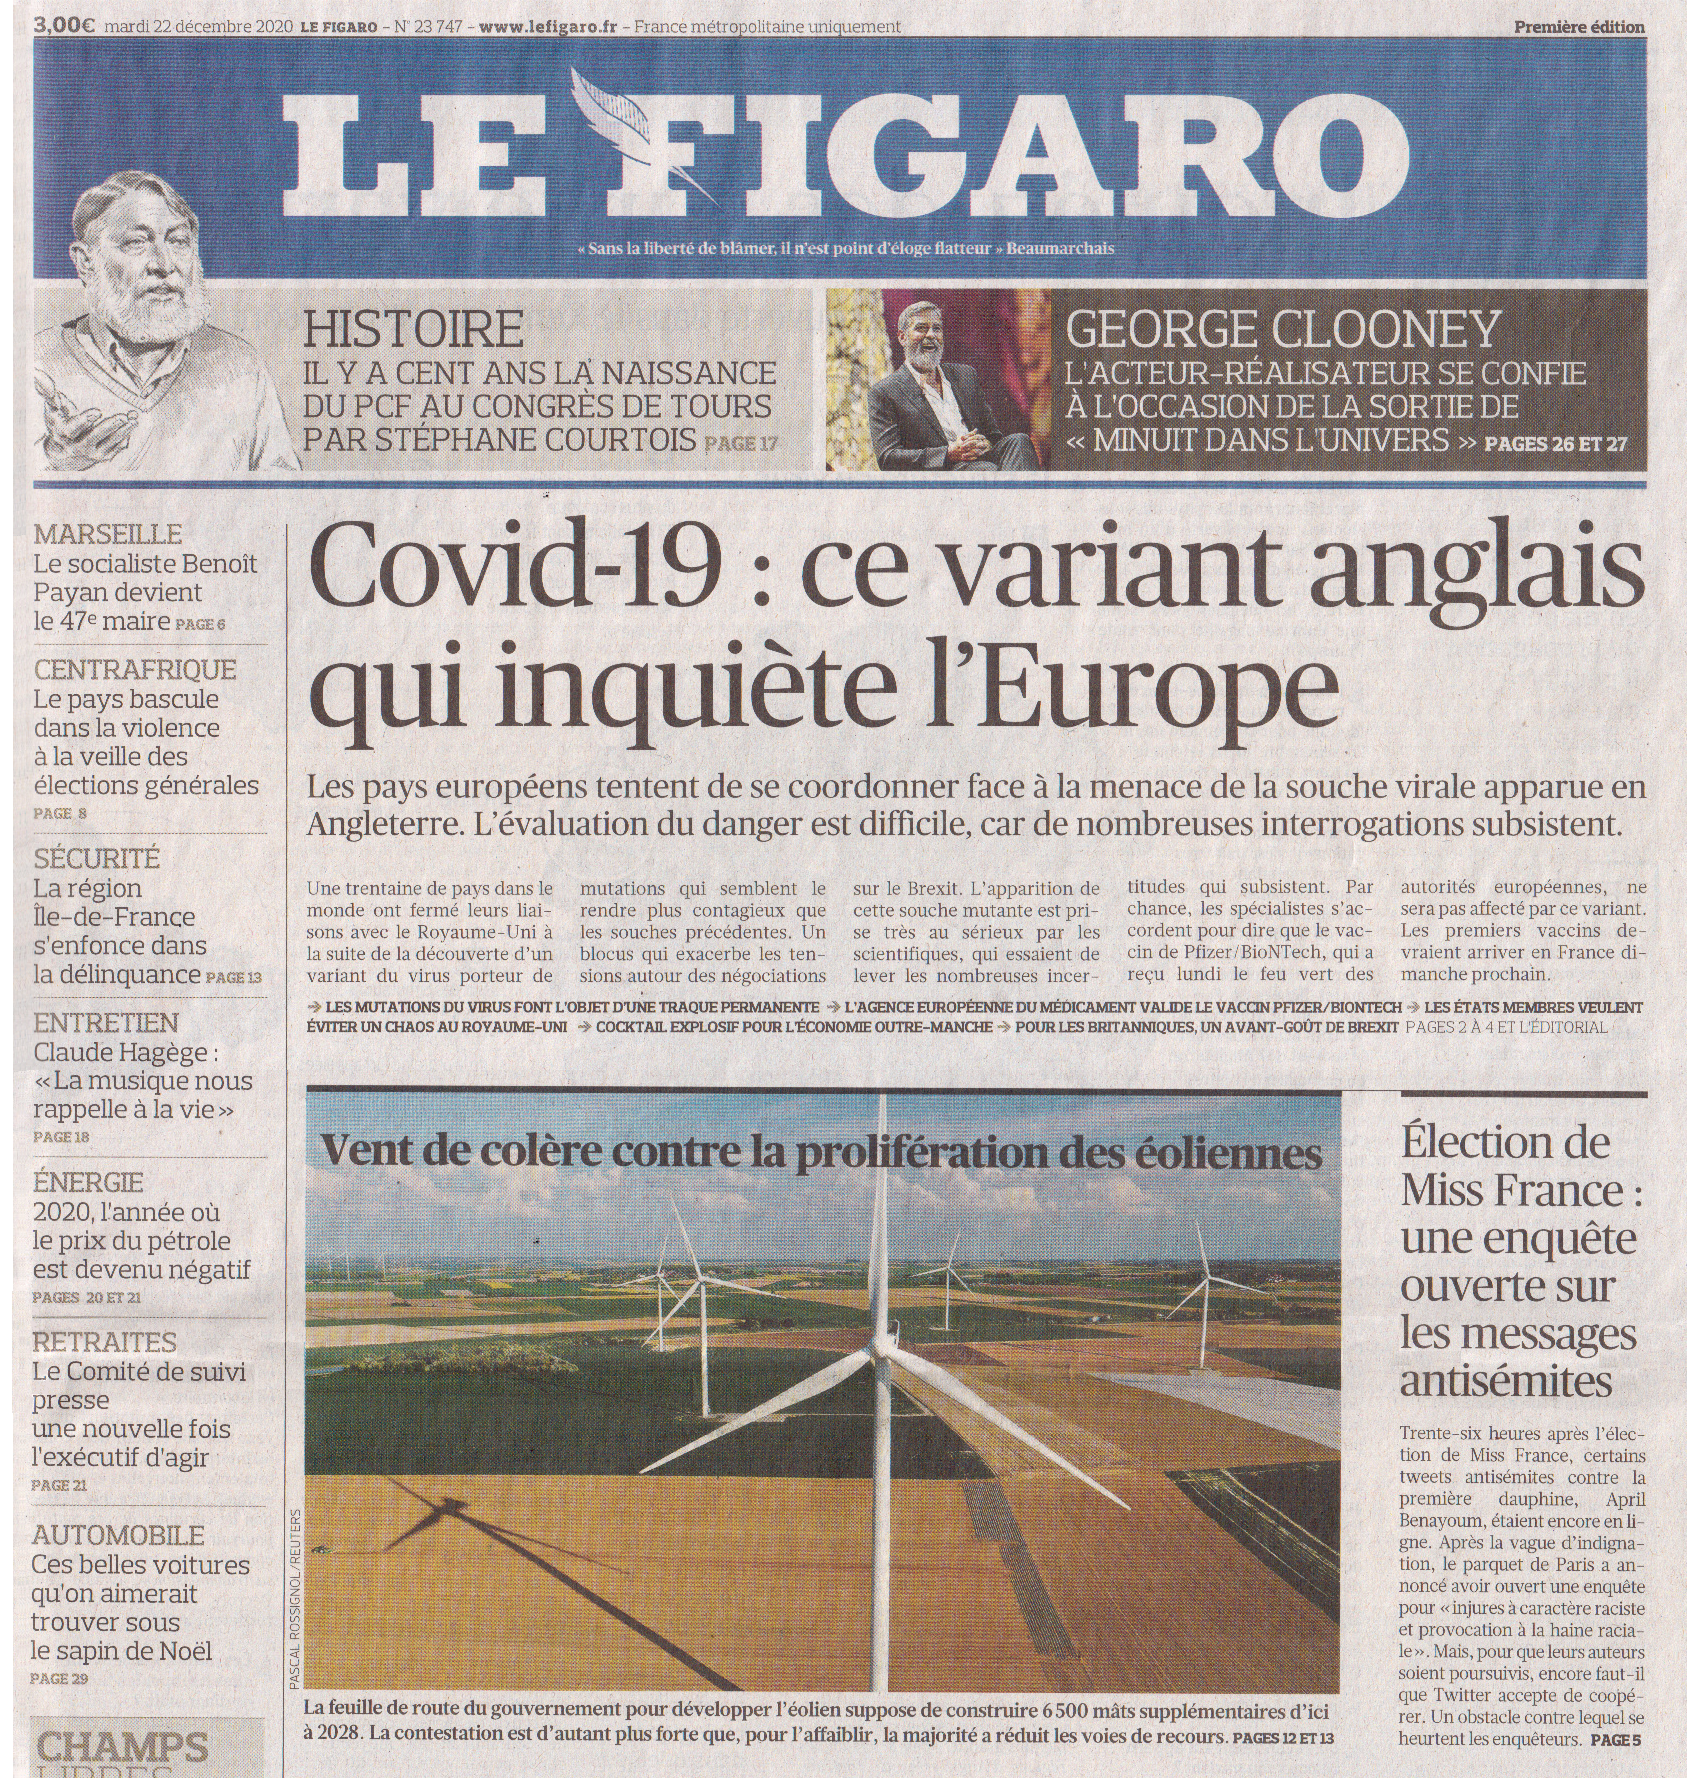 Le Figaro du 22 décembre 2020 - Eolien (1)